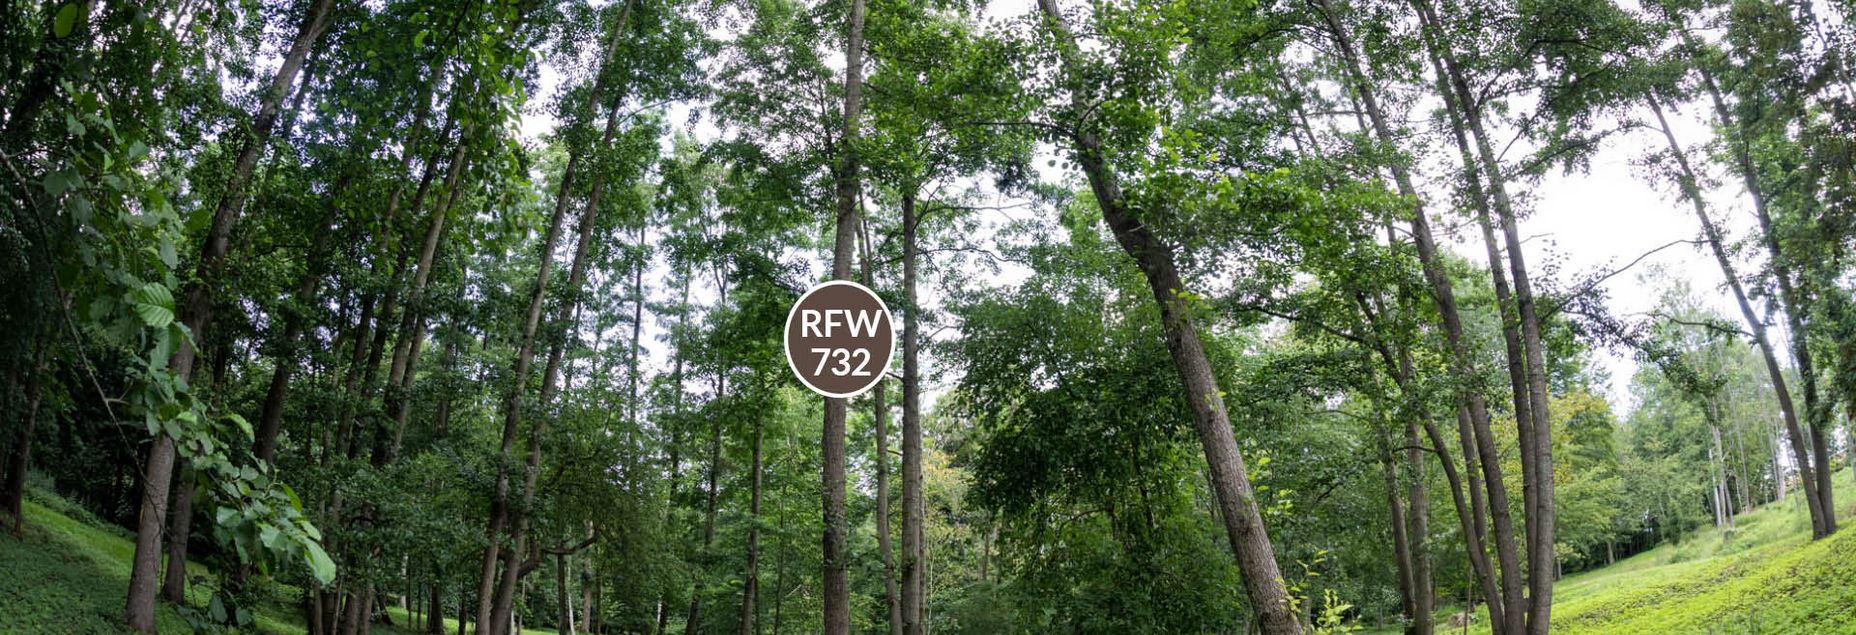 FriedWald-Onlineshop RFW 732